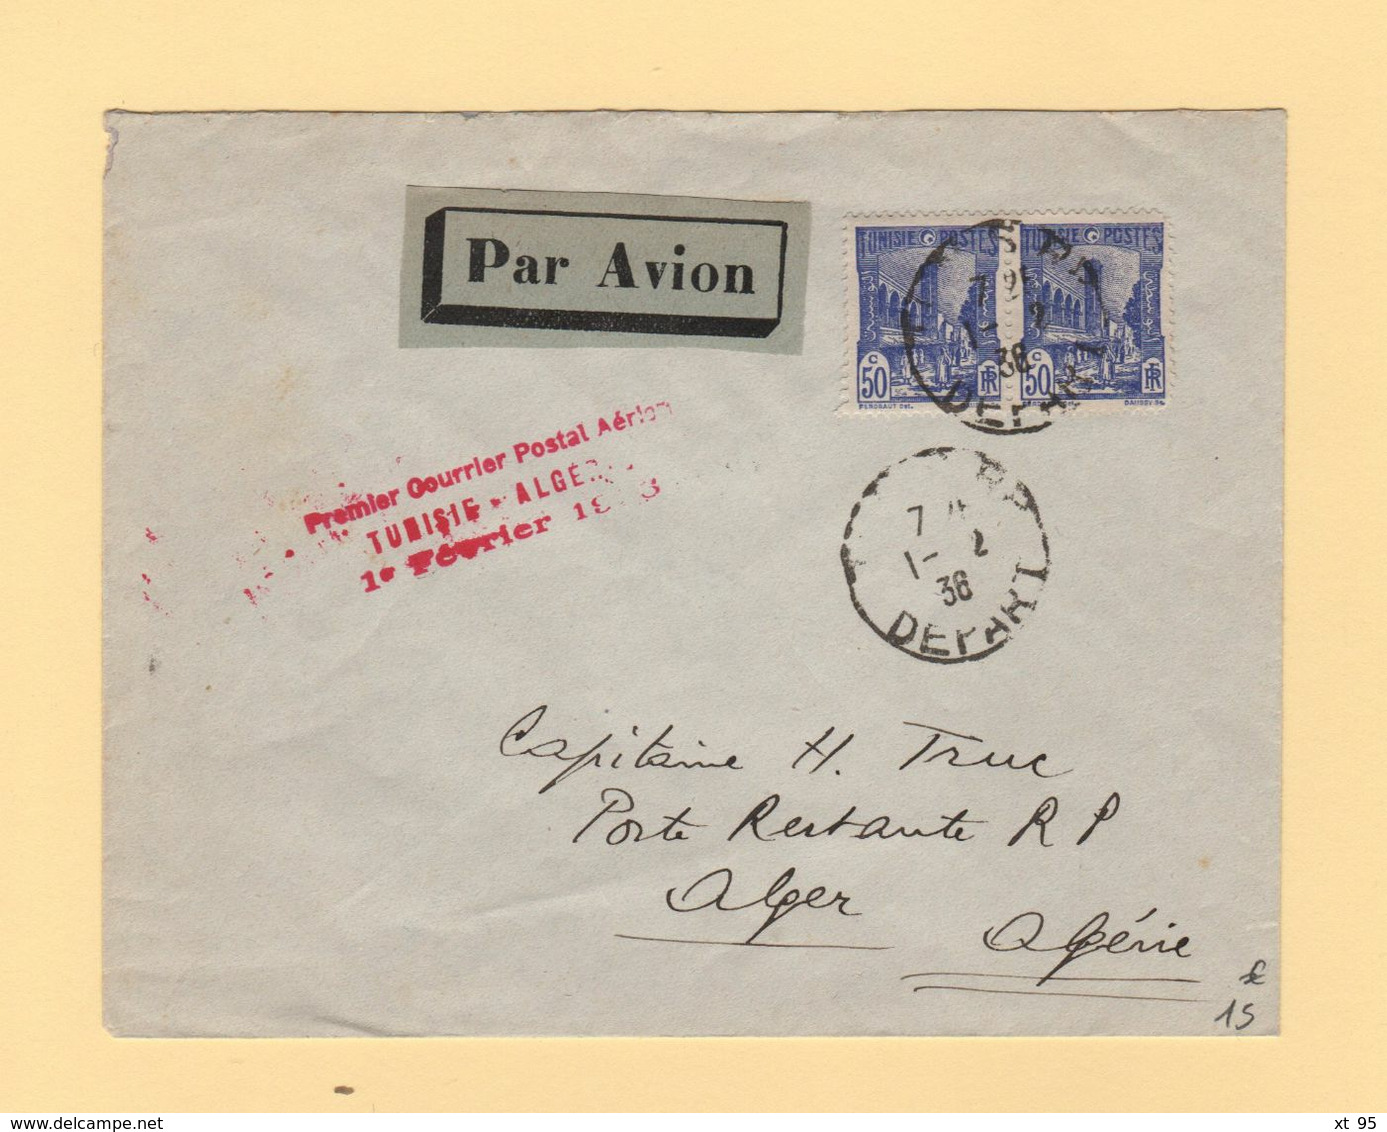 Tunisie - Premier Courrier Postal Aerien Tunisie Algerie - 1er Fevrier 1936 - Airmail